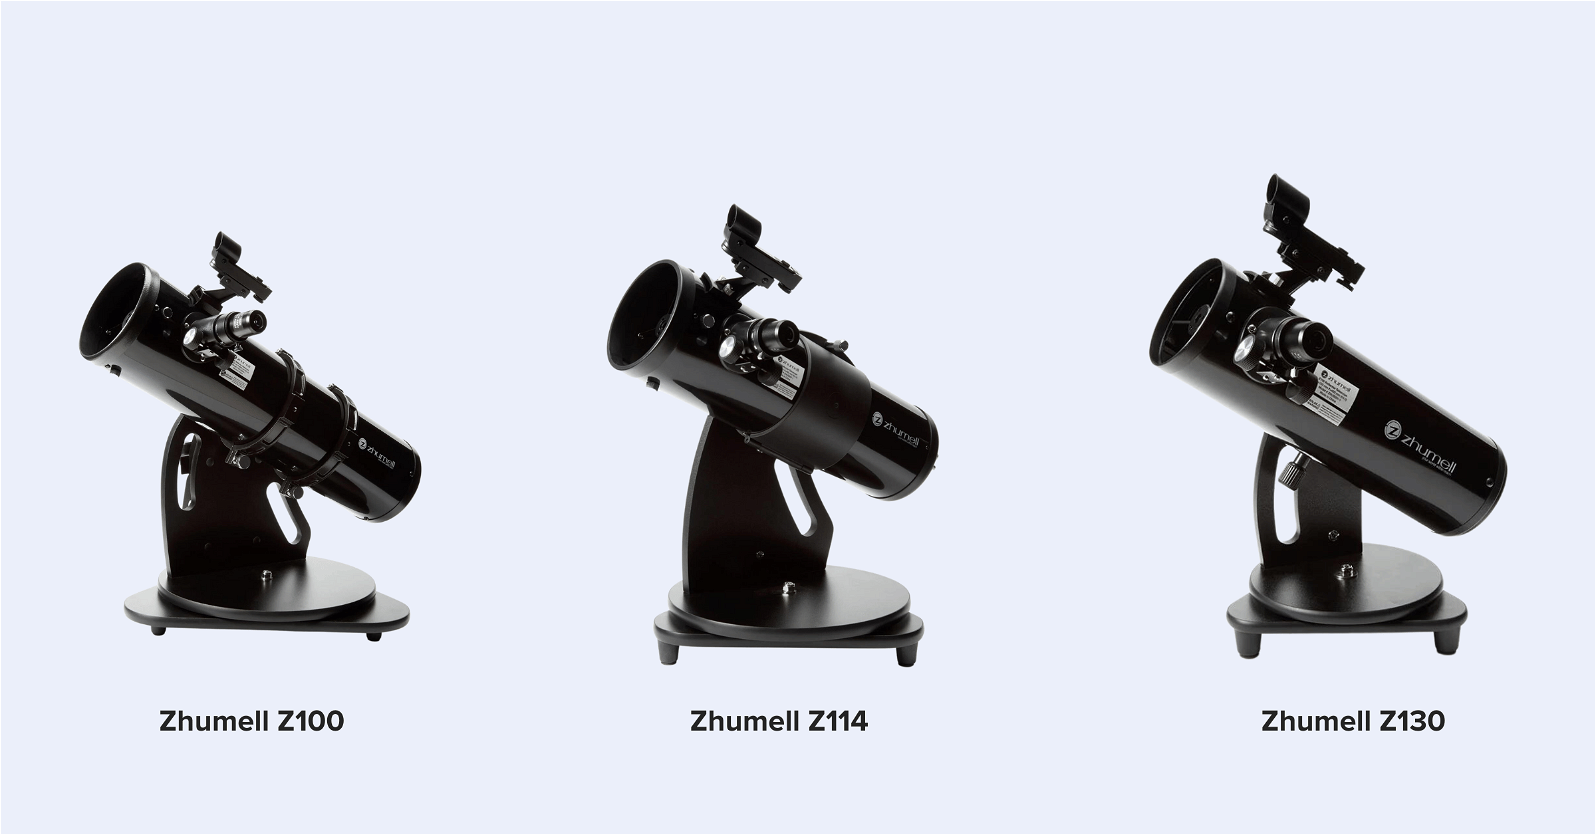 Zhumell Z series tabletops (Z100, Z114, Z130)